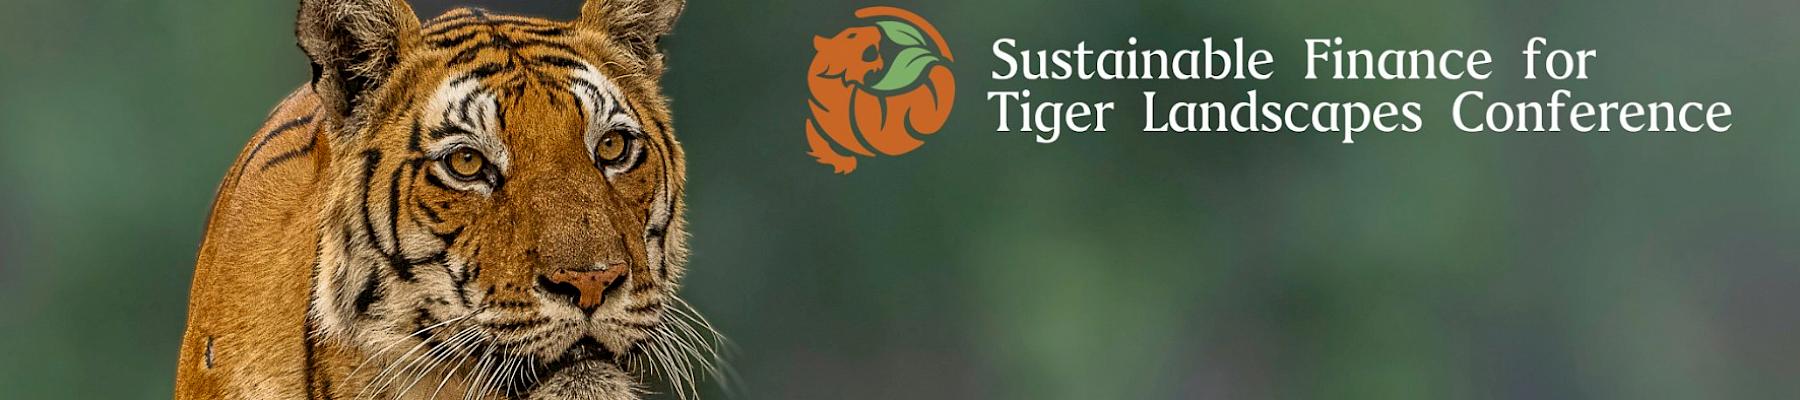 Tiger (Panthera tigris) in Kanha national park, India © WWF-Sweden / Ola Jennersten